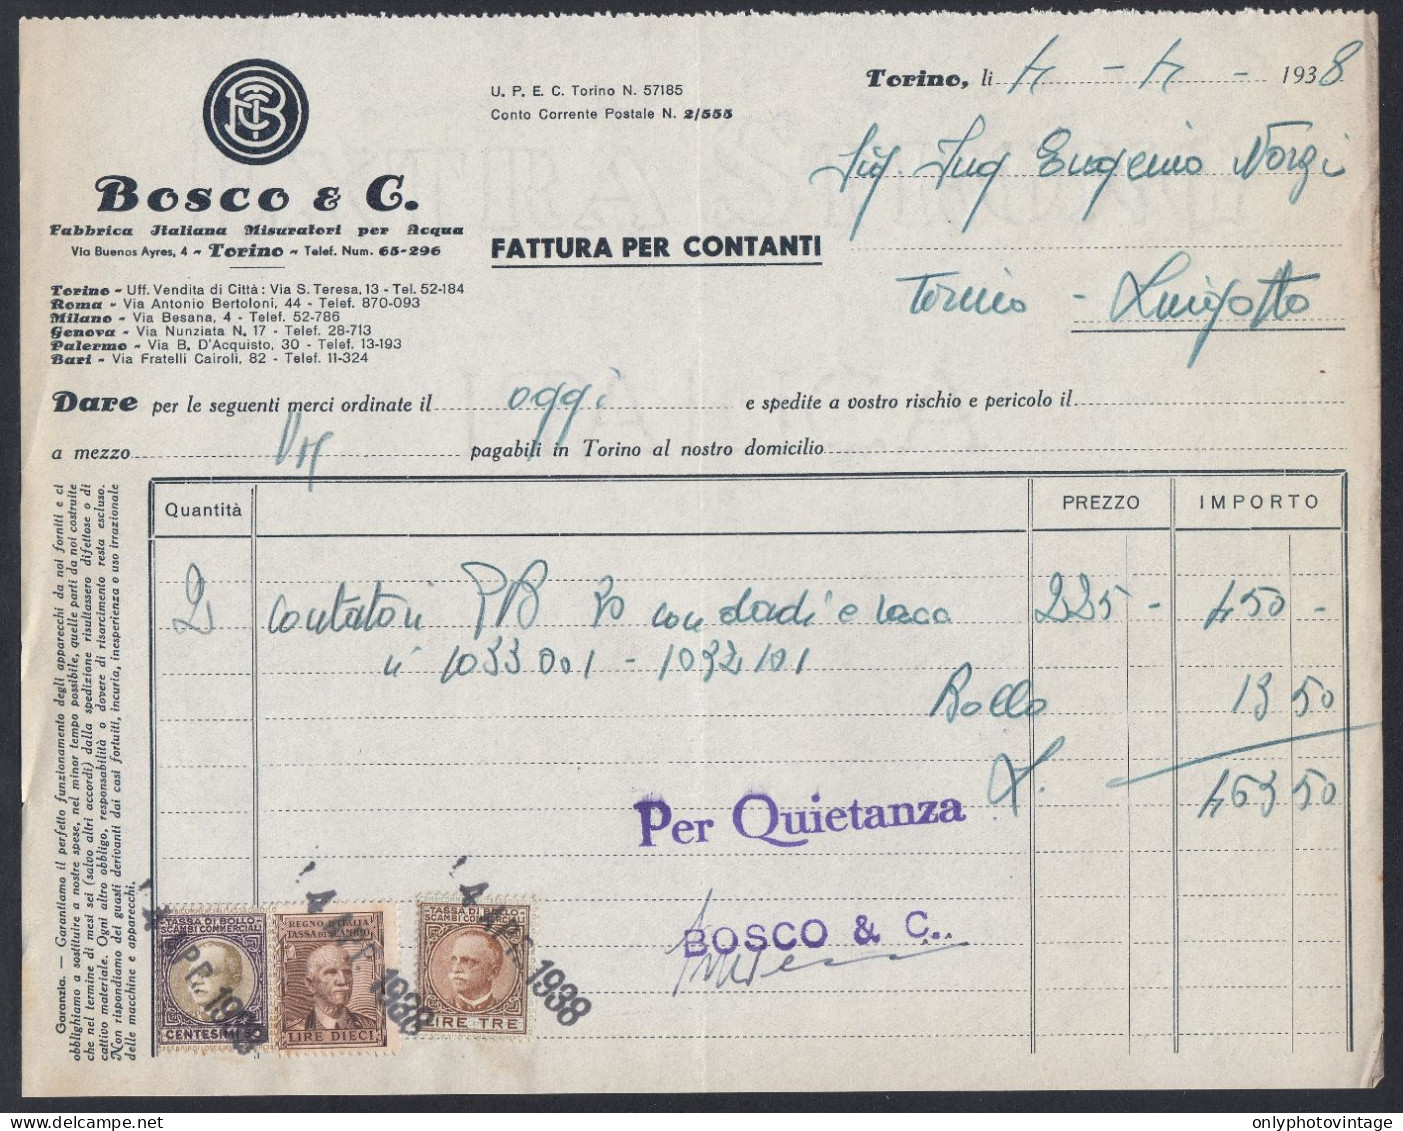 Torino 1938 - Bosco & C. - Fabbrica Italiana Misuratori Acqua - Fattura - Italie